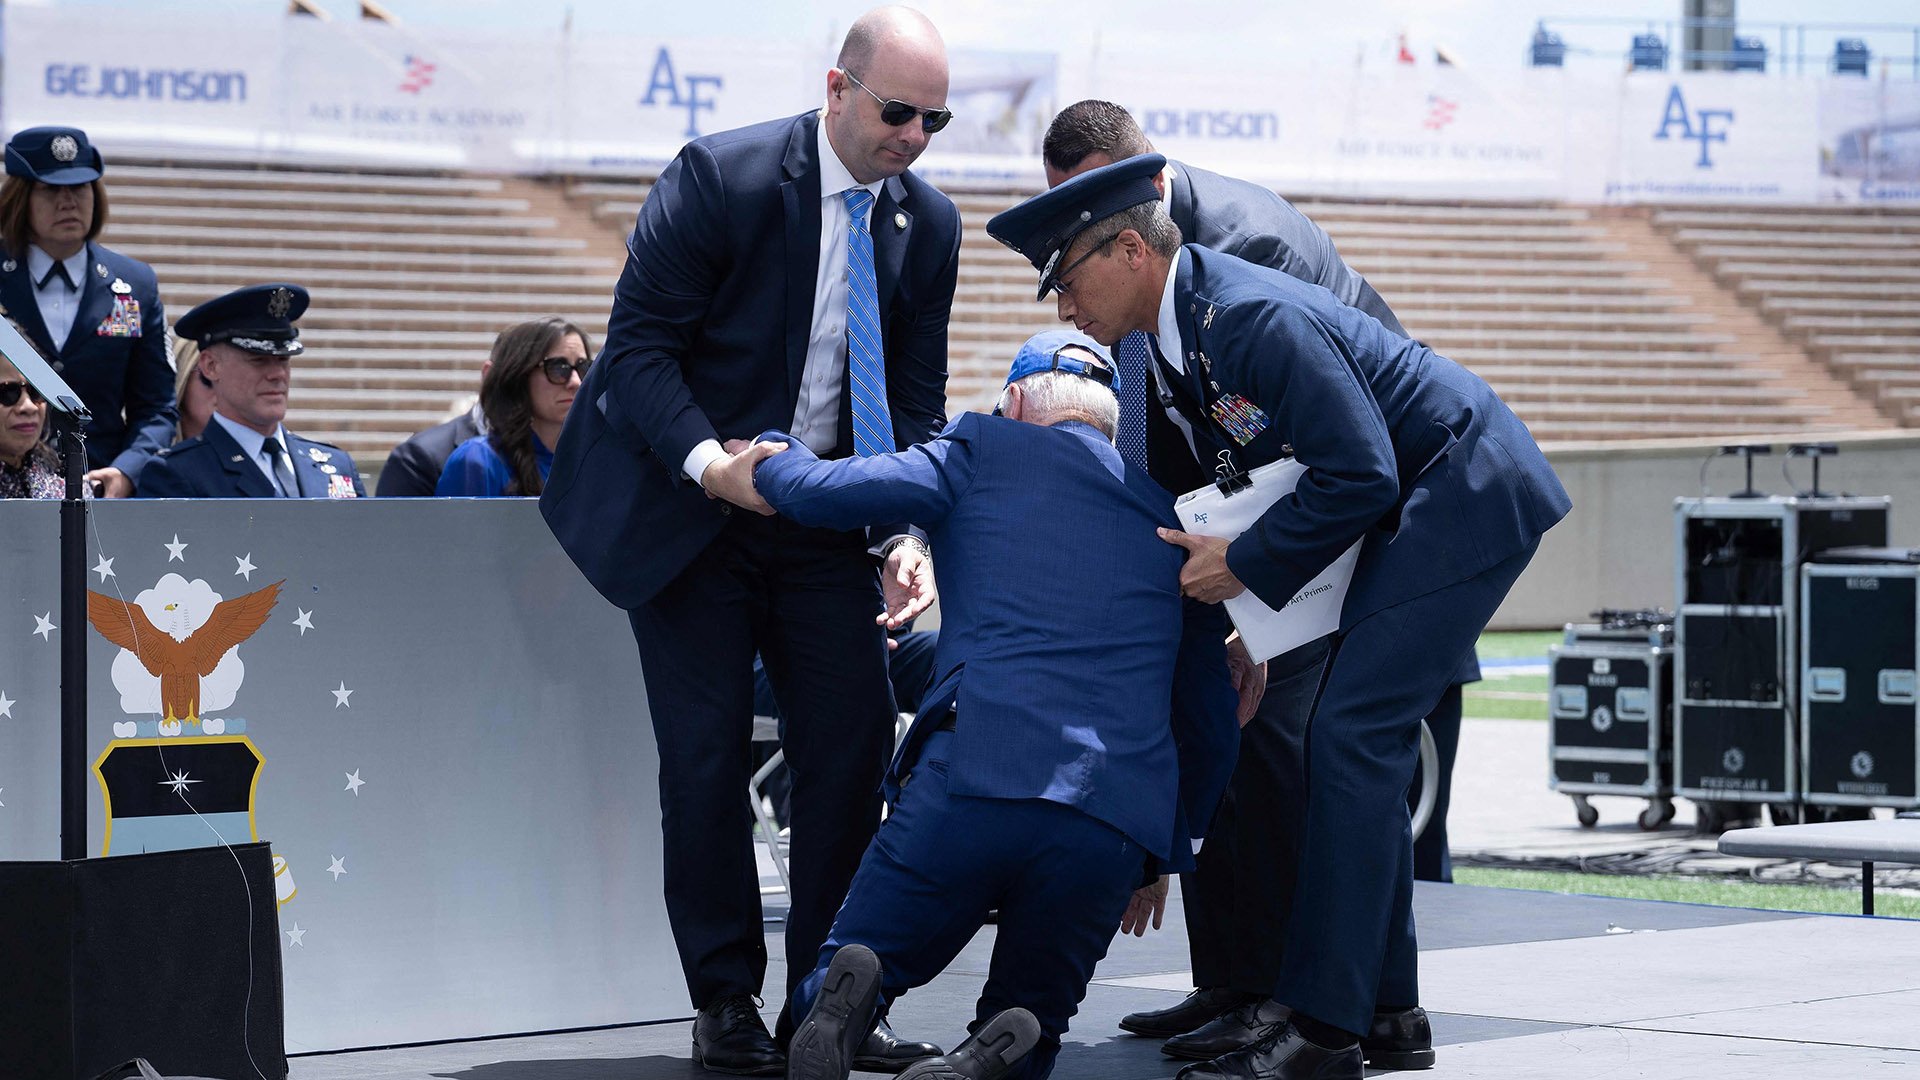  VIDEO Biden s-a împiedicat și a căzut în timpul unei ceremonii la Academia Forțelor Aeriene